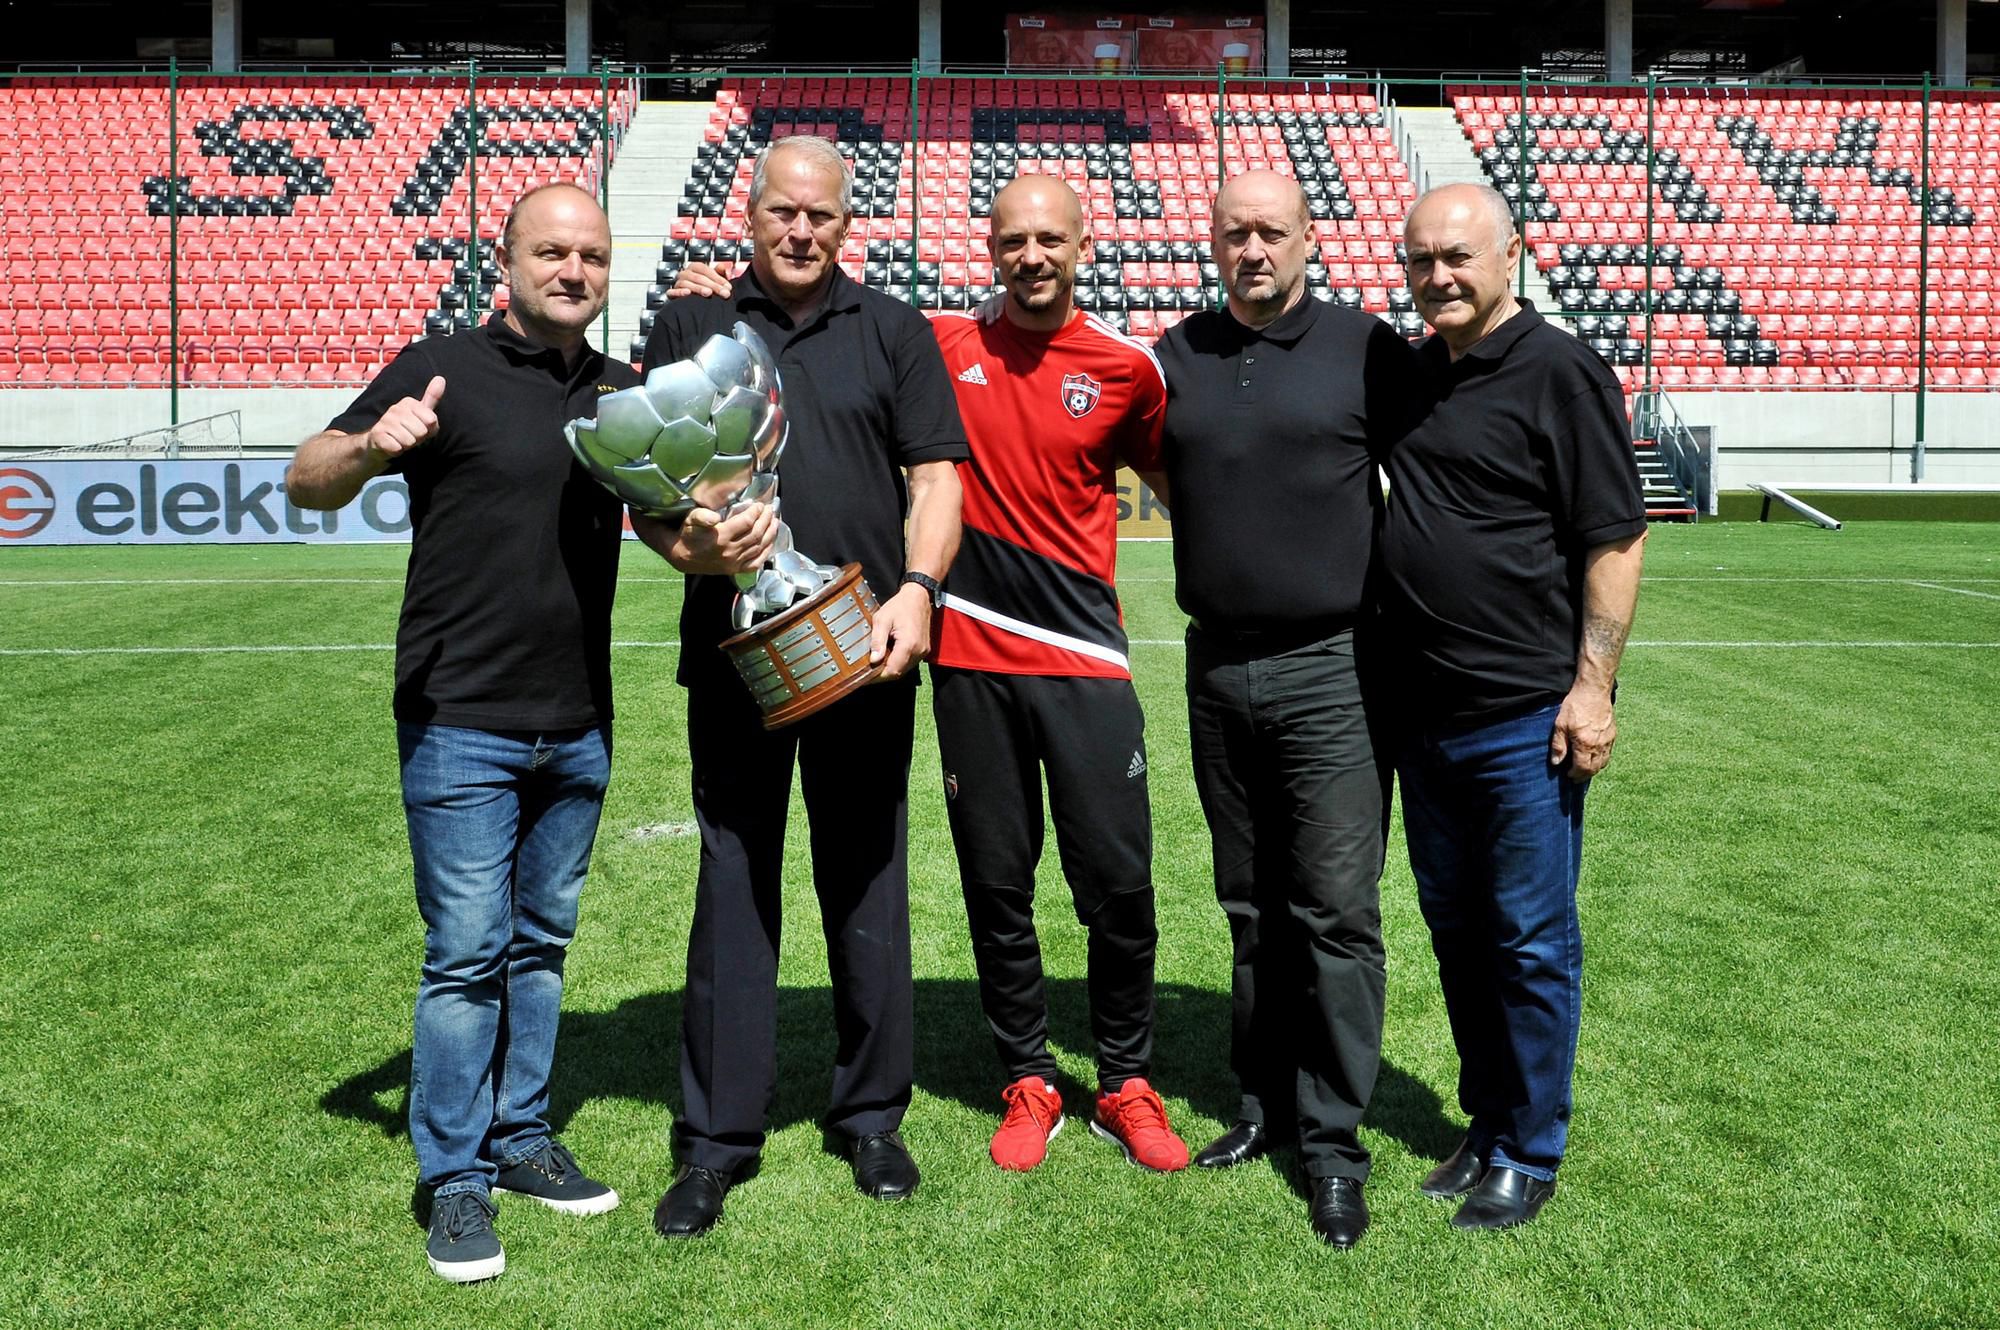 Vedenie trnavského klubu z roku 2018 s trénerom Nestorom El Maestrom (v strede), Vladimír Poór je po jeho ľavej ruke.